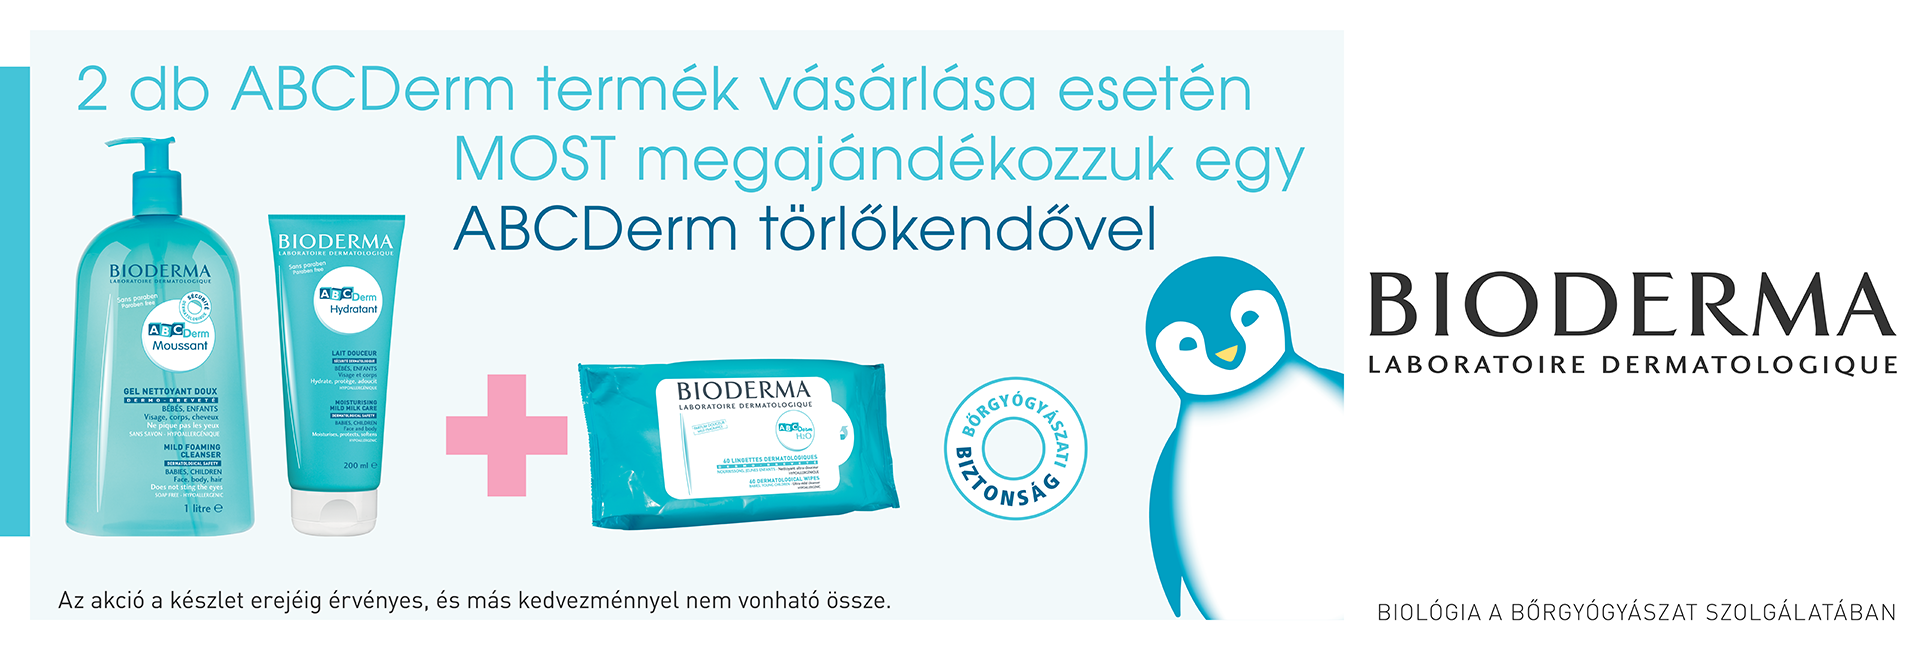 2019. szeptember 20. és október 31. között 2db Bioderma ABC Derm termék rendelése esetén ajándékba adunk 1db exkluzív Bioderma ABCDerm popsitörlő kendő 60db terméket 2.090 Ft értékben!